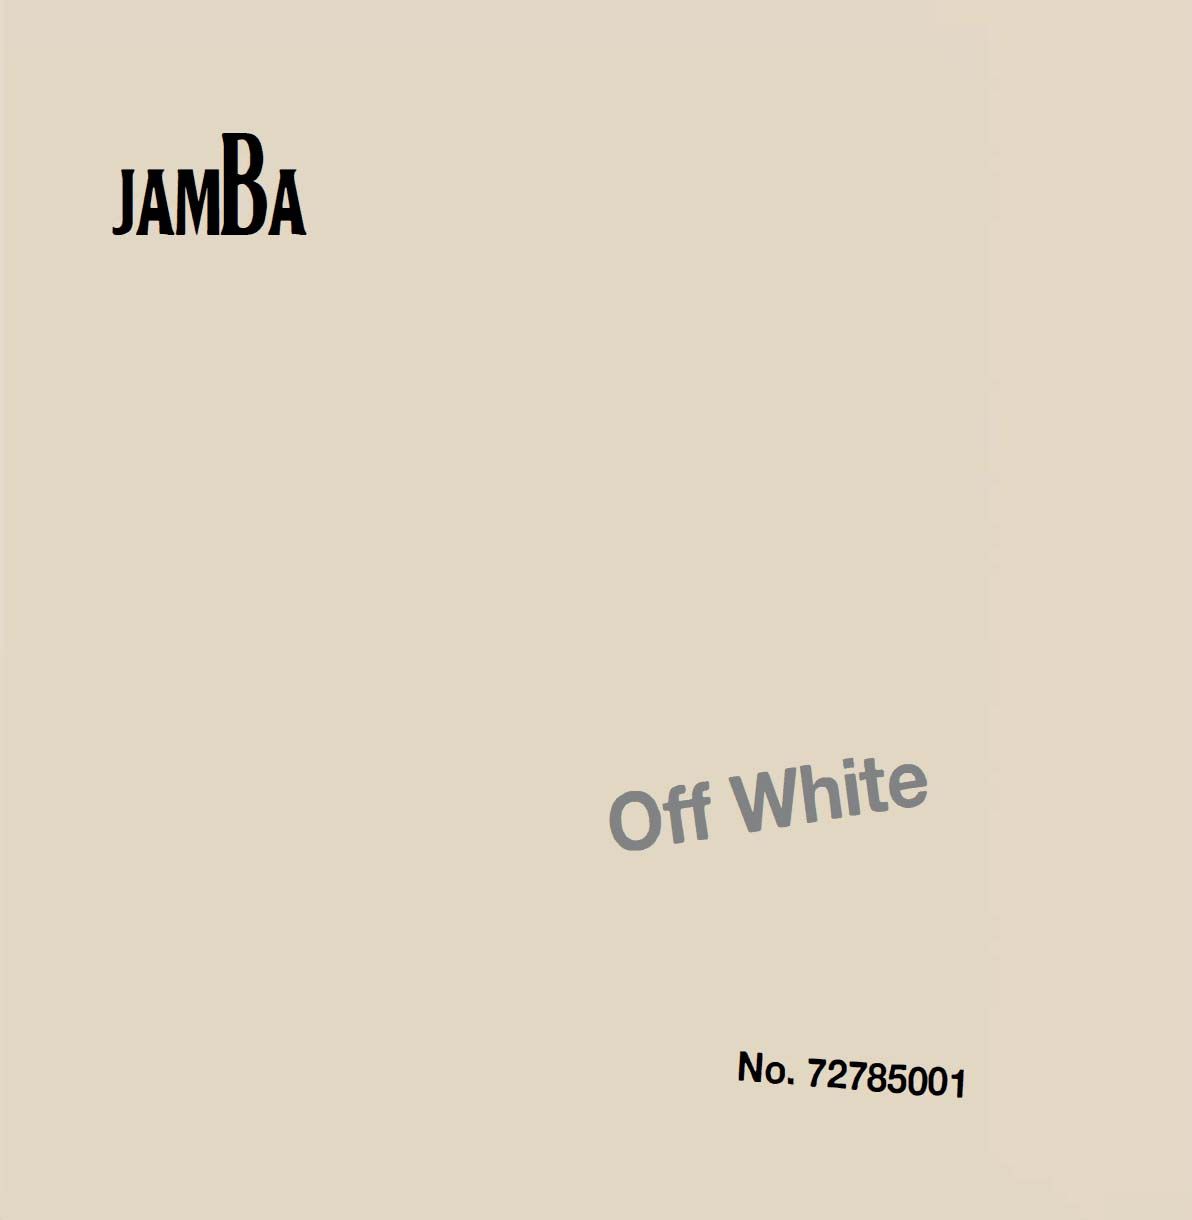 JAMBA album cover